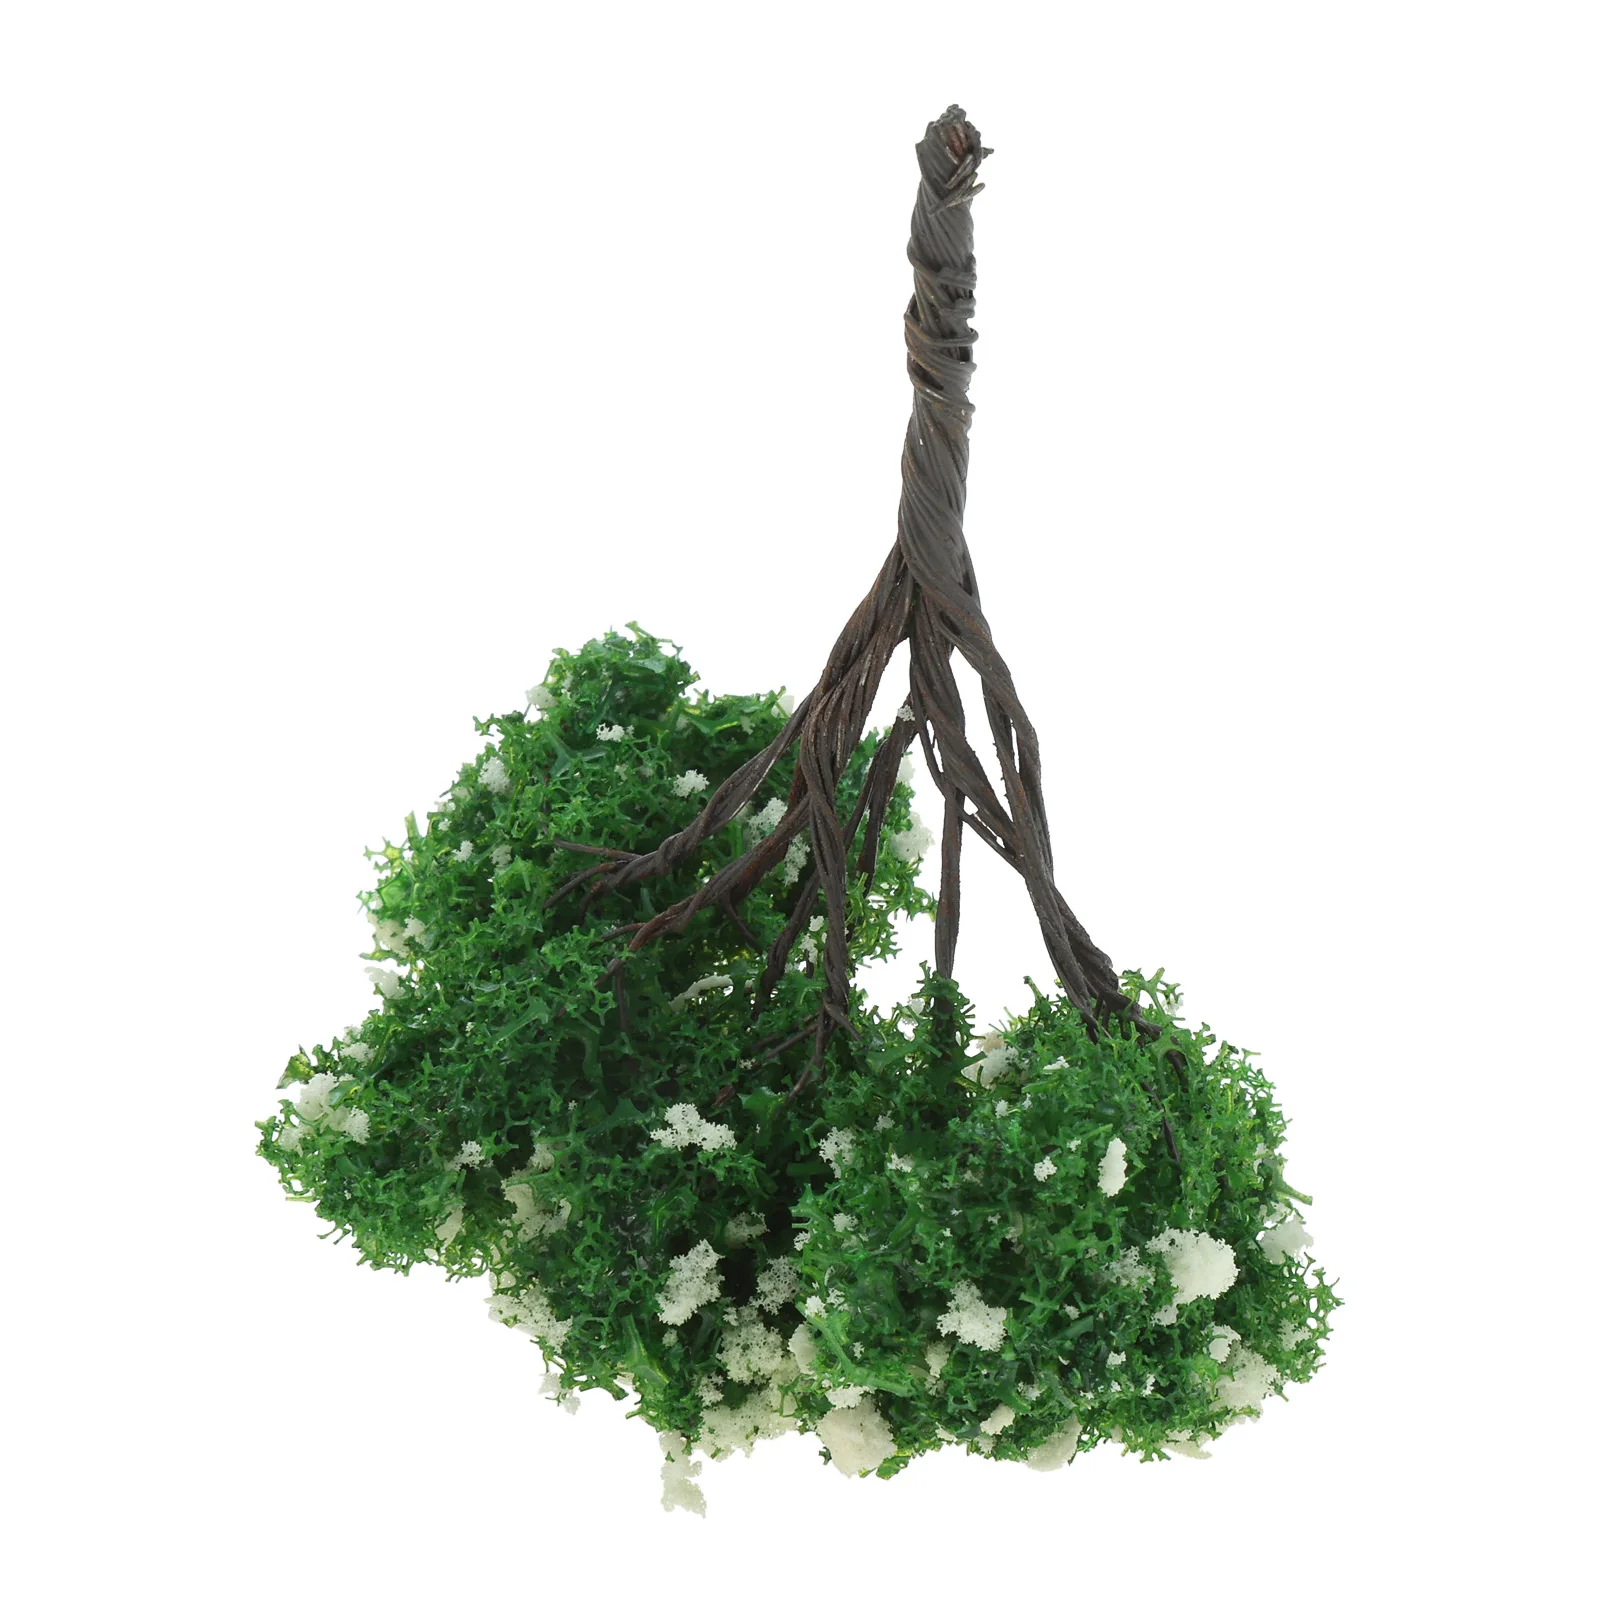 20PCS White+Green Tree Model Miniature Railroad Scenery Artificial Wargame Diorama  Supplies for Micro Landscape Garden Ornament - AliExpress